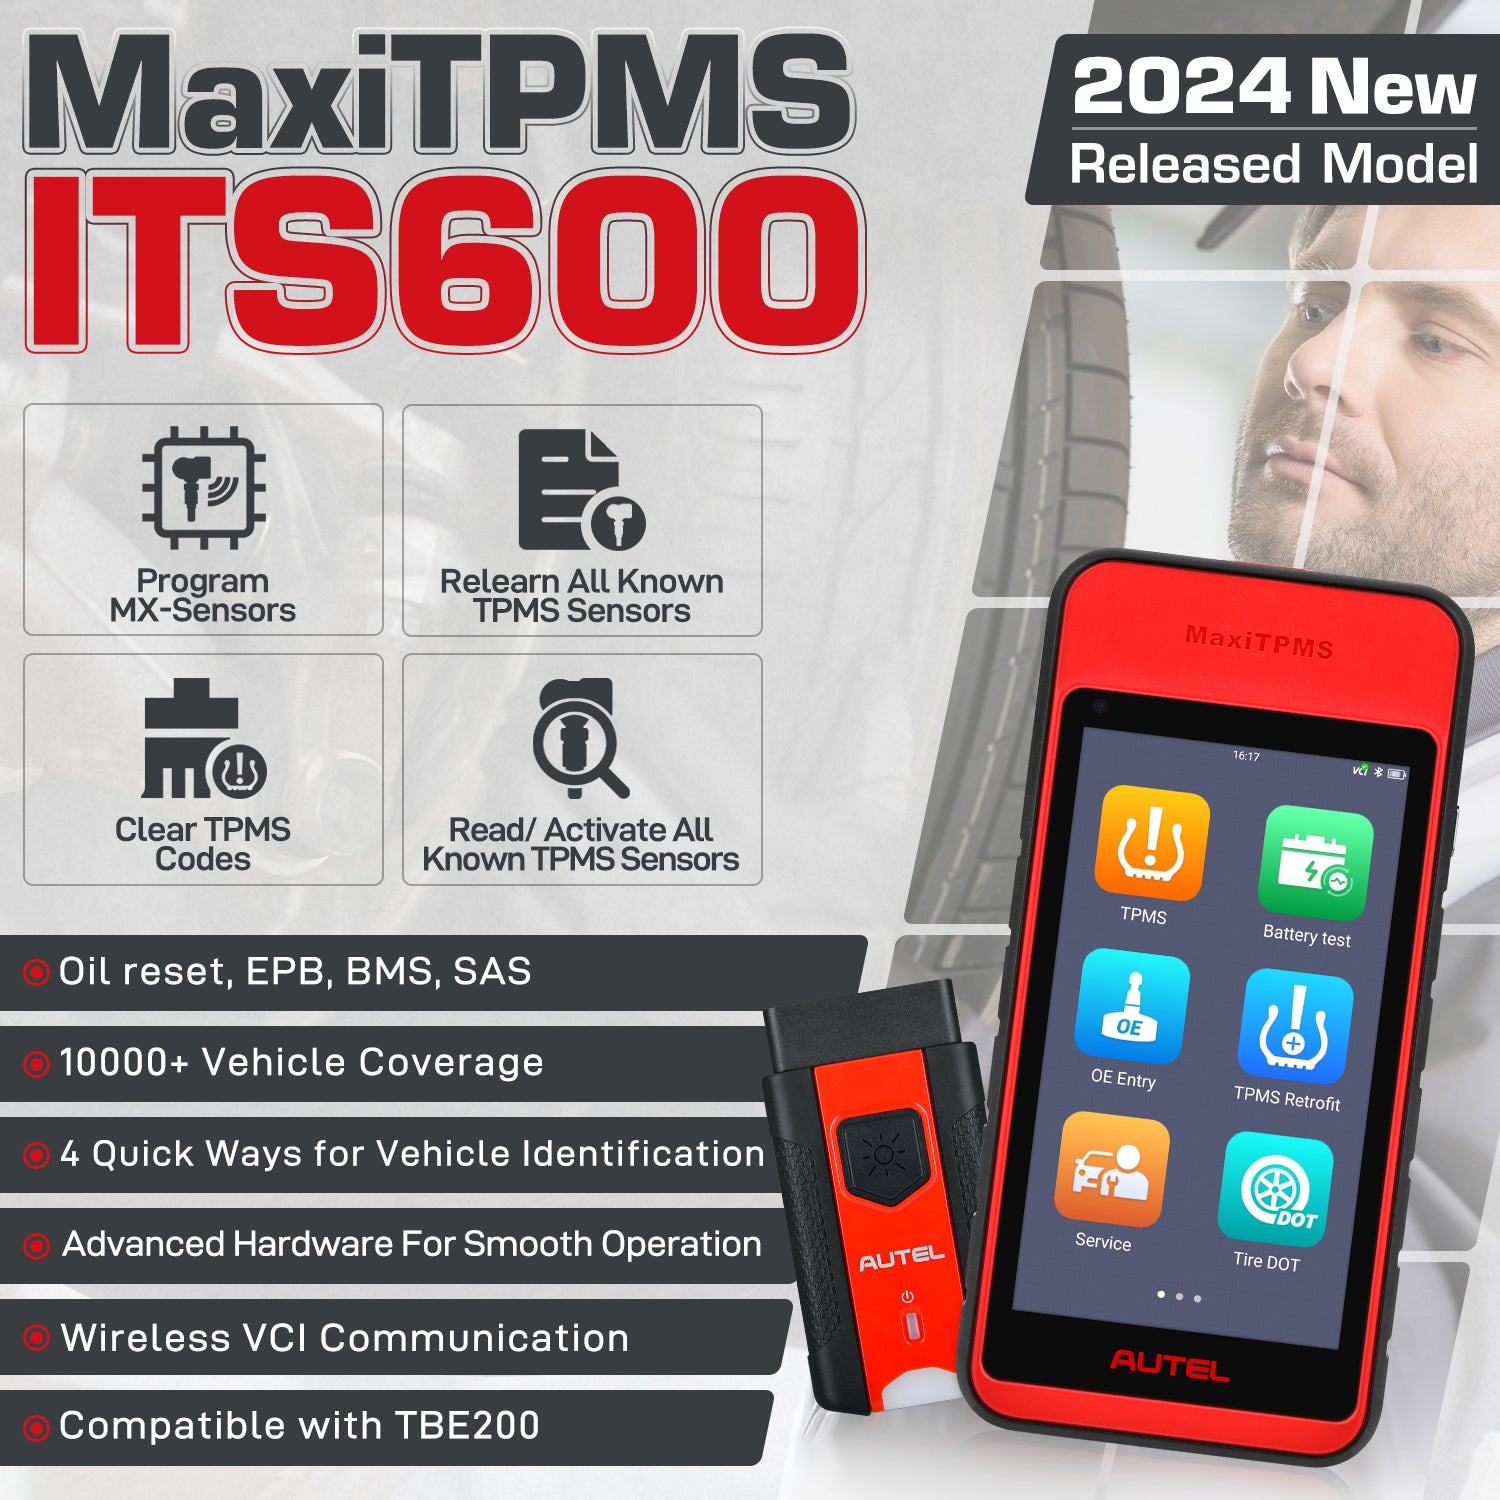 Autel MaxiTPMS ITS600(E) features 2023